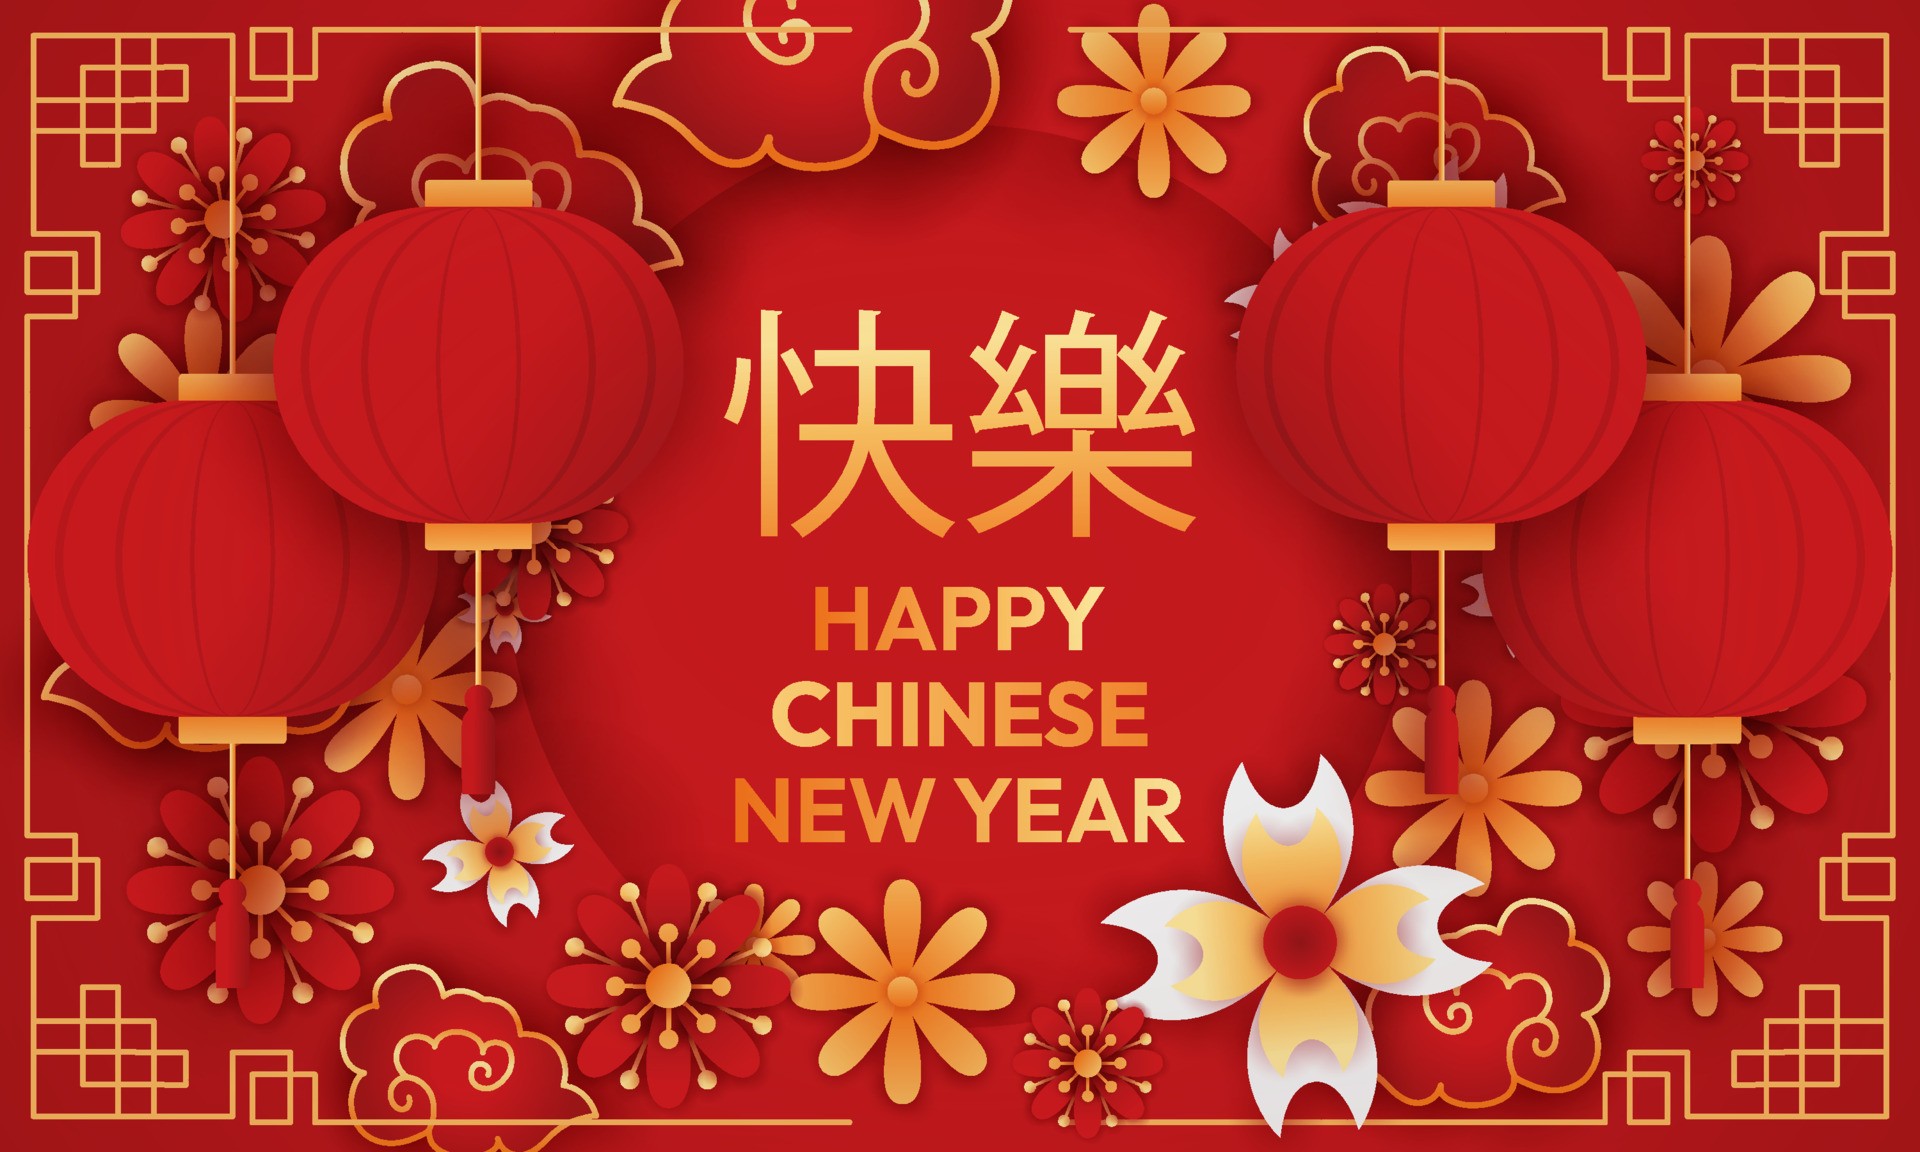 中国新年快乐红色背景插图0